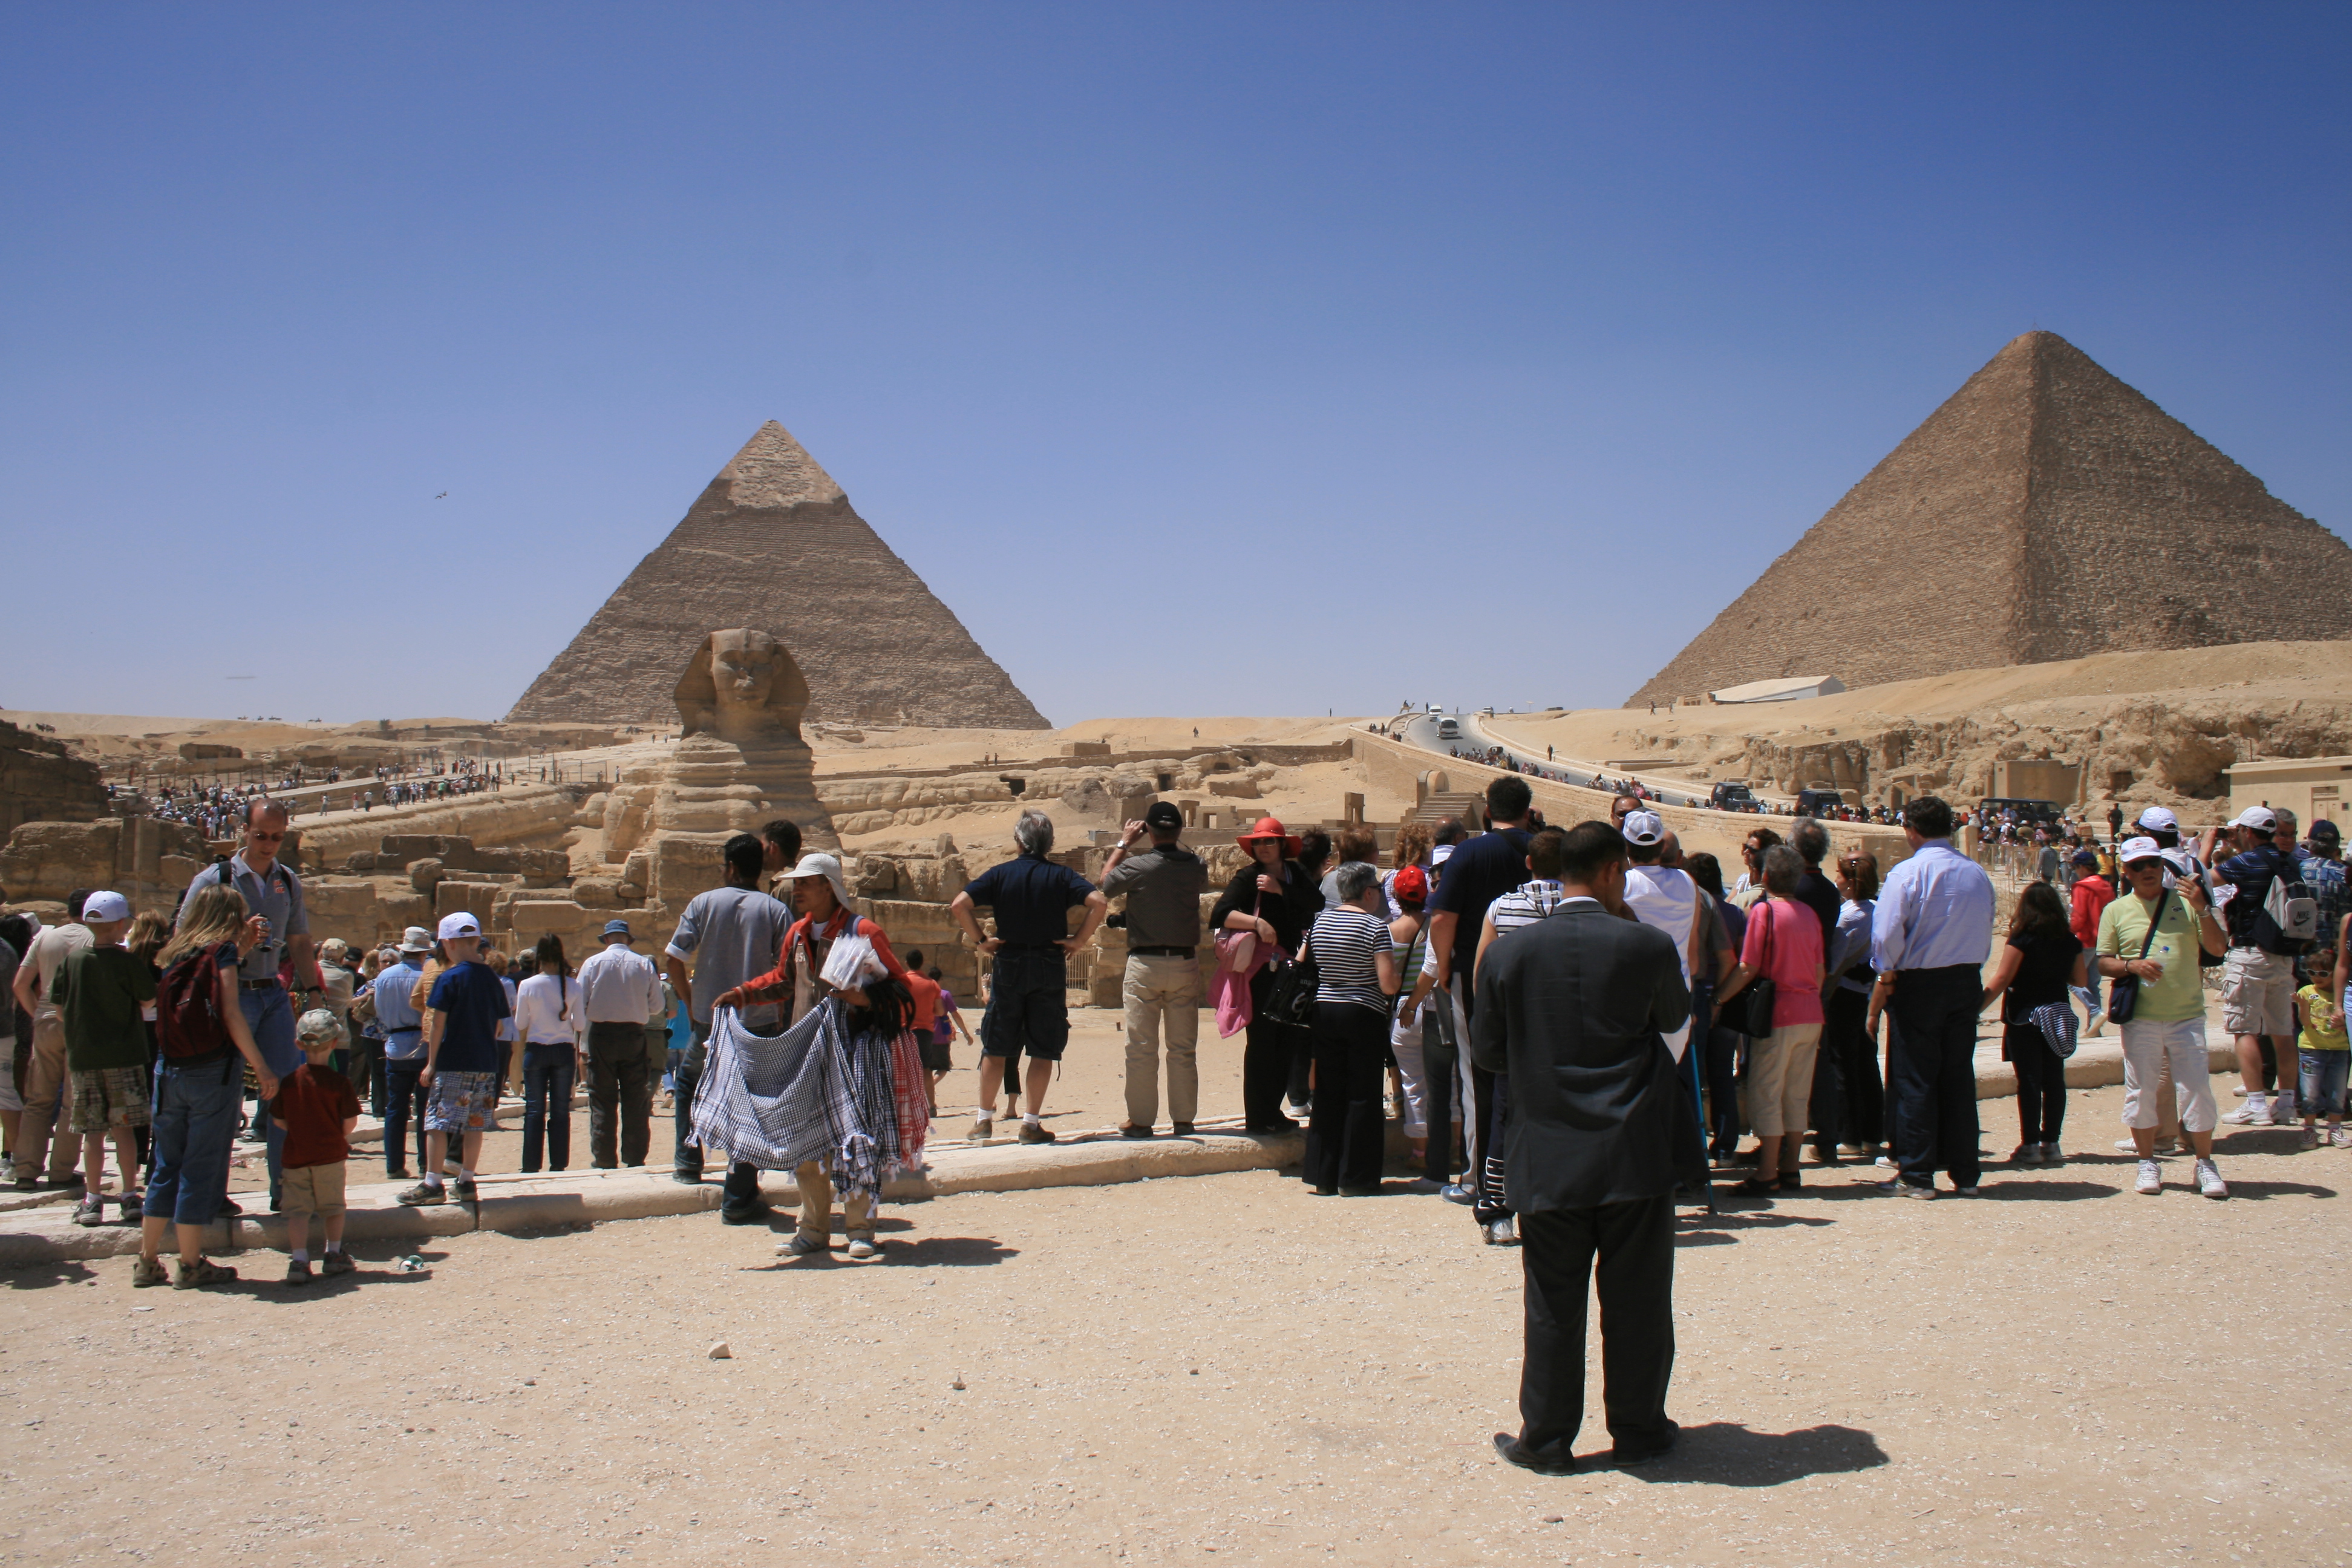 Giza Pyramids Crowds